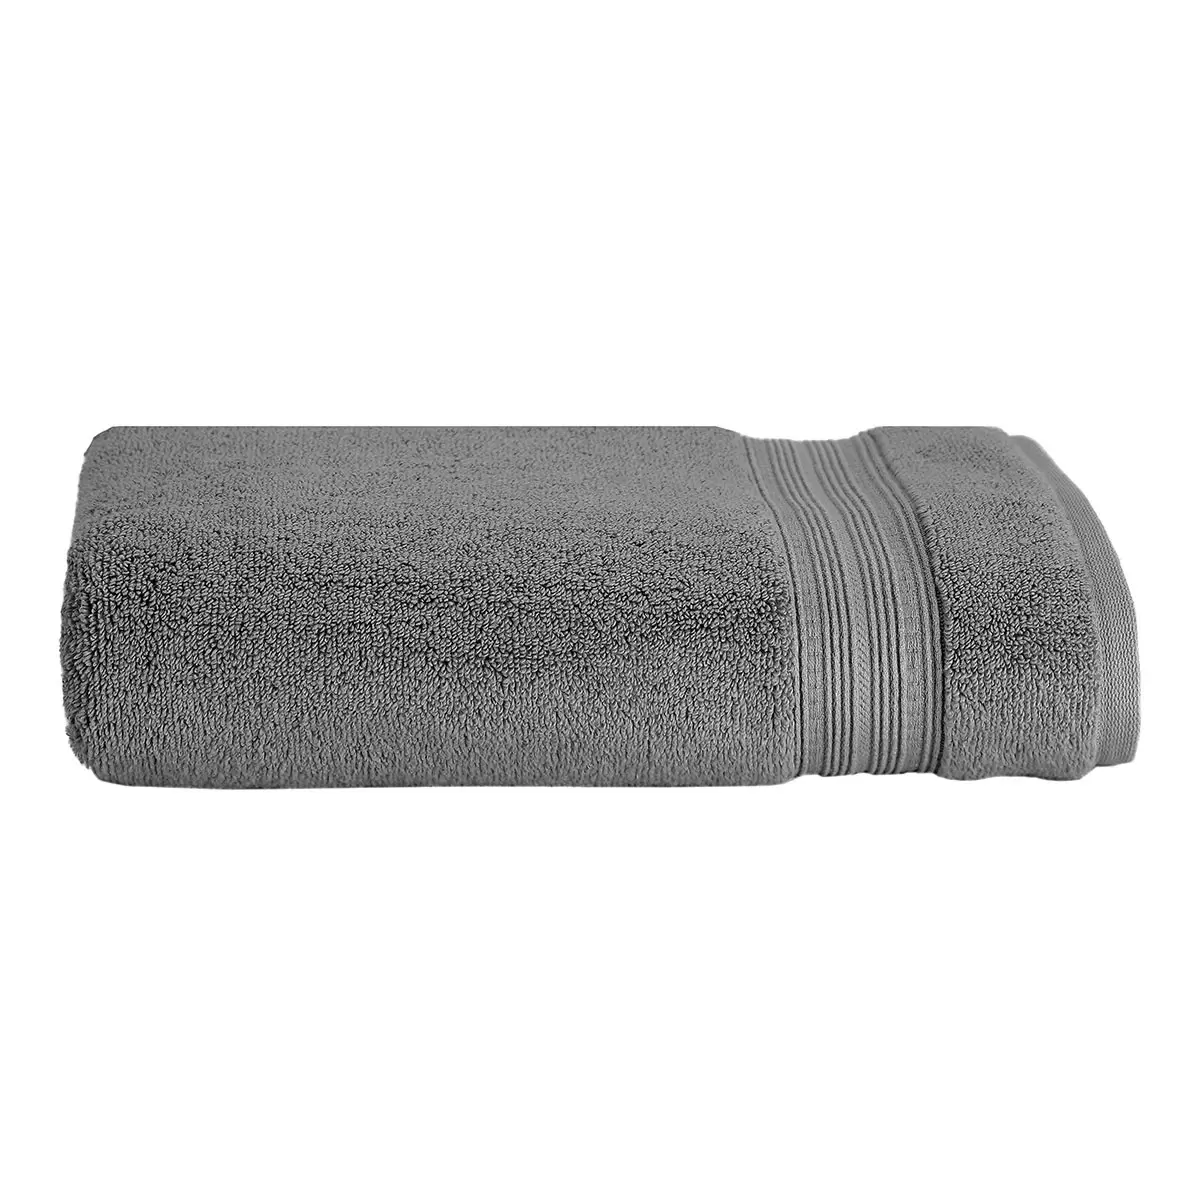 Grandeur 印度低捻純棉加大浴巾 88公分 X 177 公分 灰色